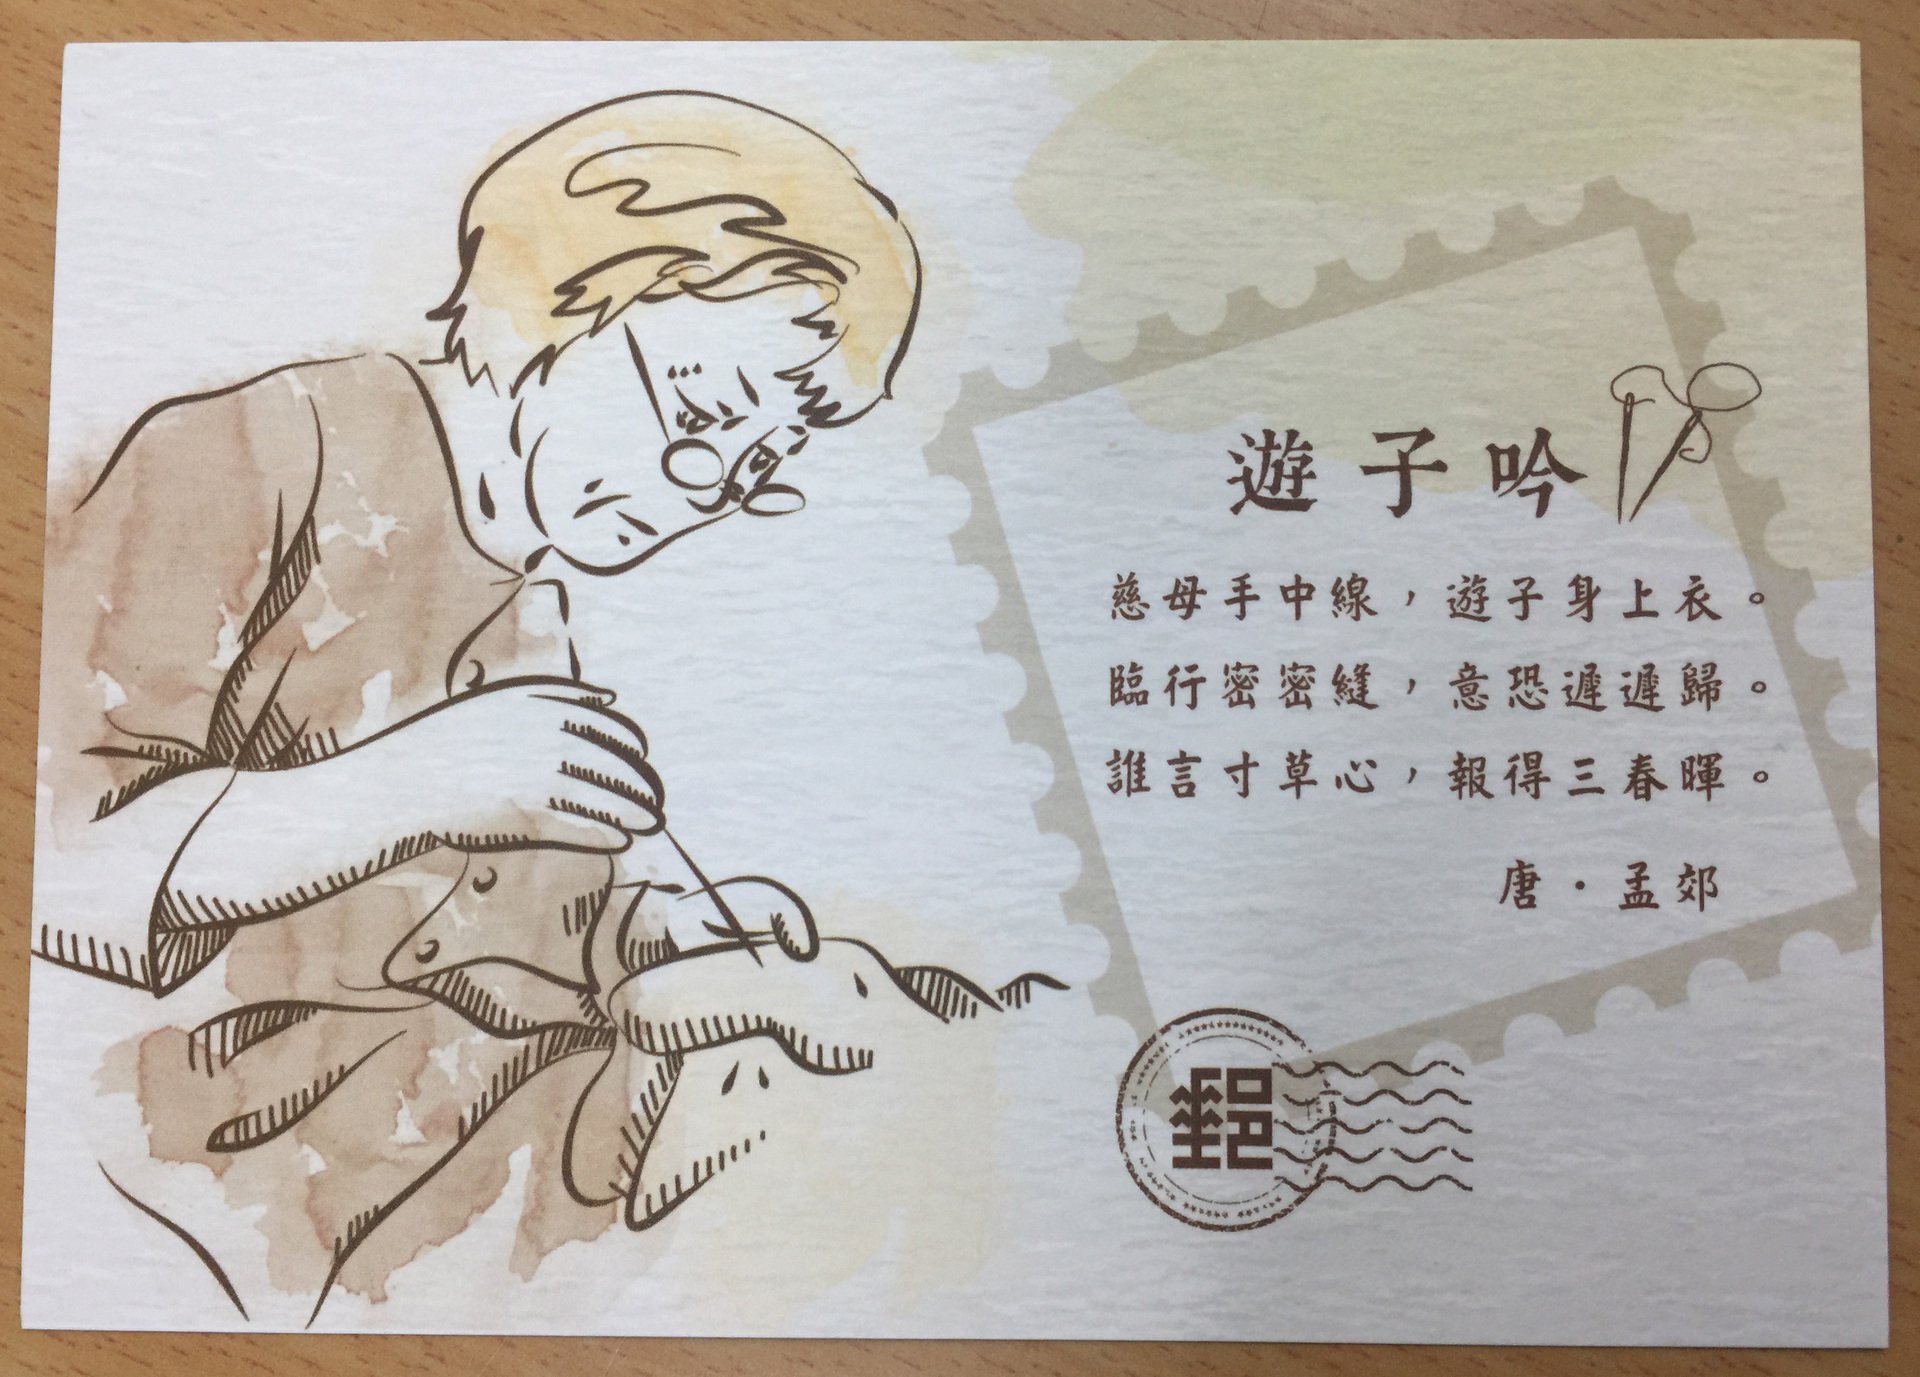 由中華郵政公司免費提供之母親節明信片3